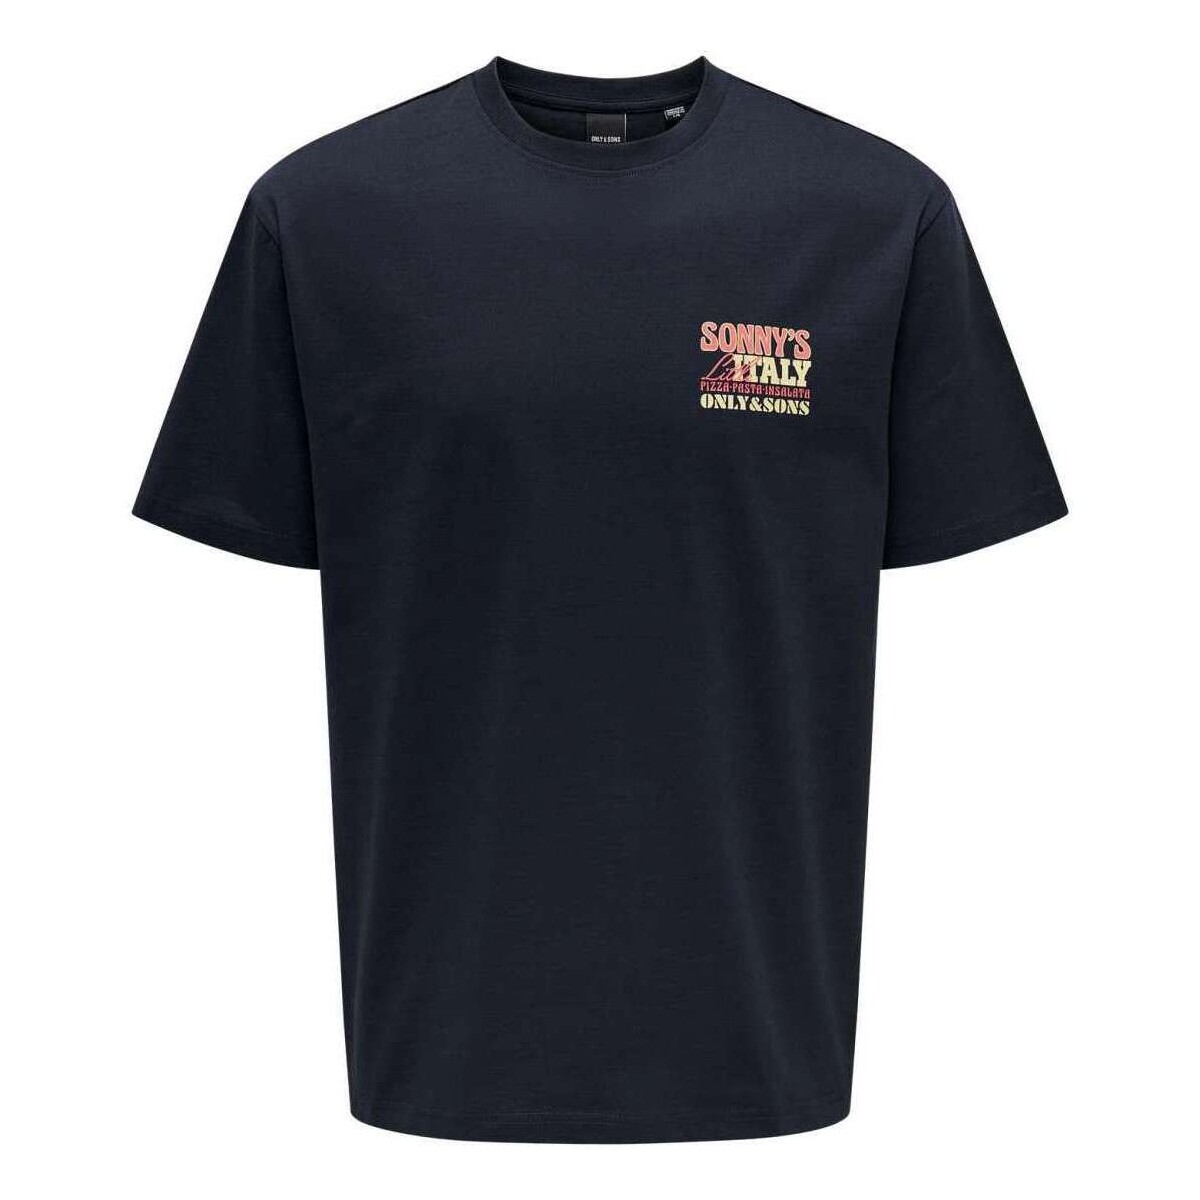 Vêtements Homme T-shirts manches courtes Only&sons 162301VTPE24 Marine